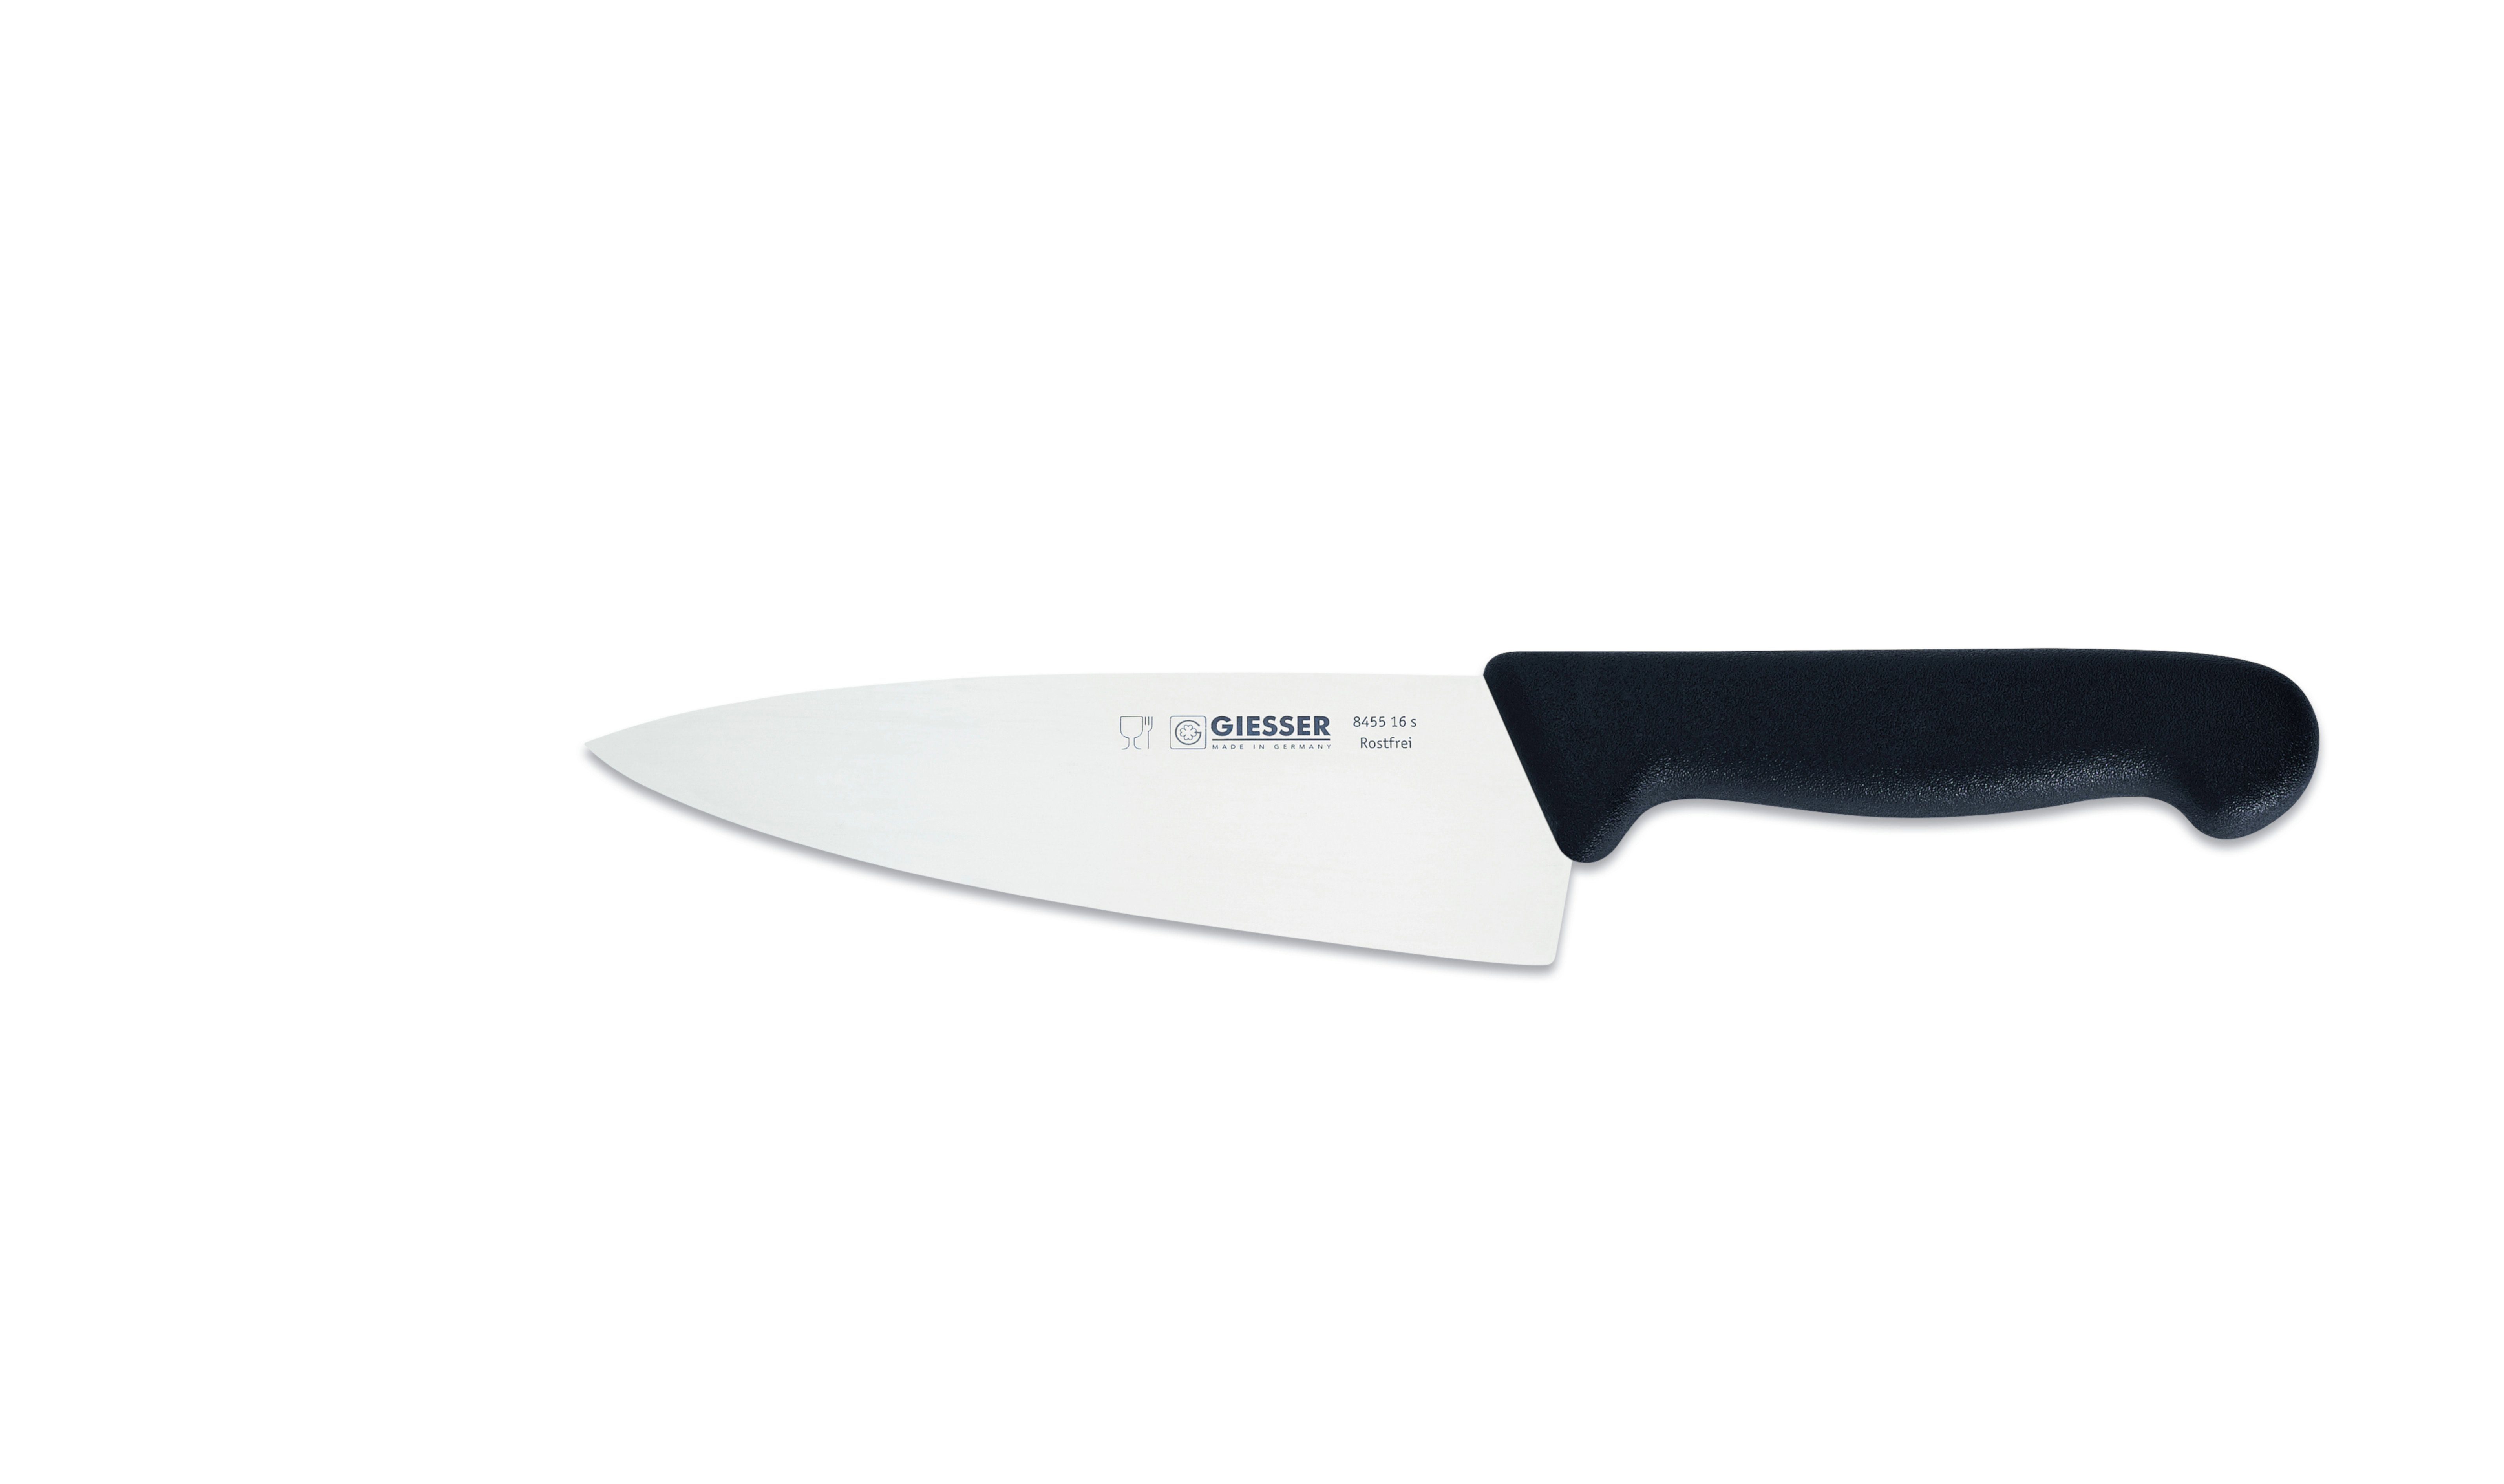 Giesser Messer Kochmesser Küchenmesser breit 8455, Rostfrei, breite Form, scharf, Handabzug, Ideal für jede Küche schwarz